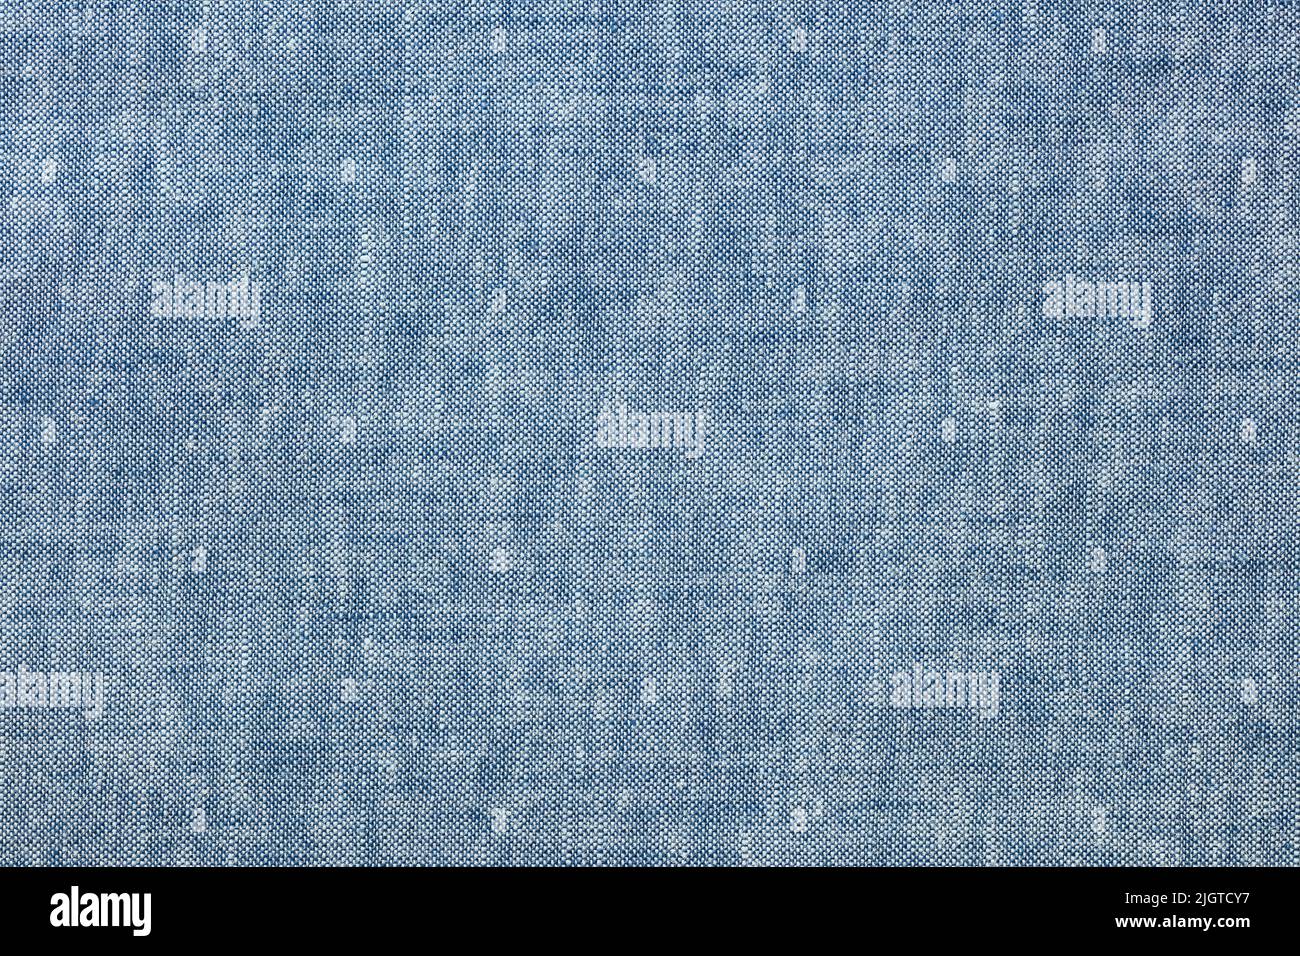 azul lino natural algodón textura de fondo. diseño de alto detalle. Foto de stock